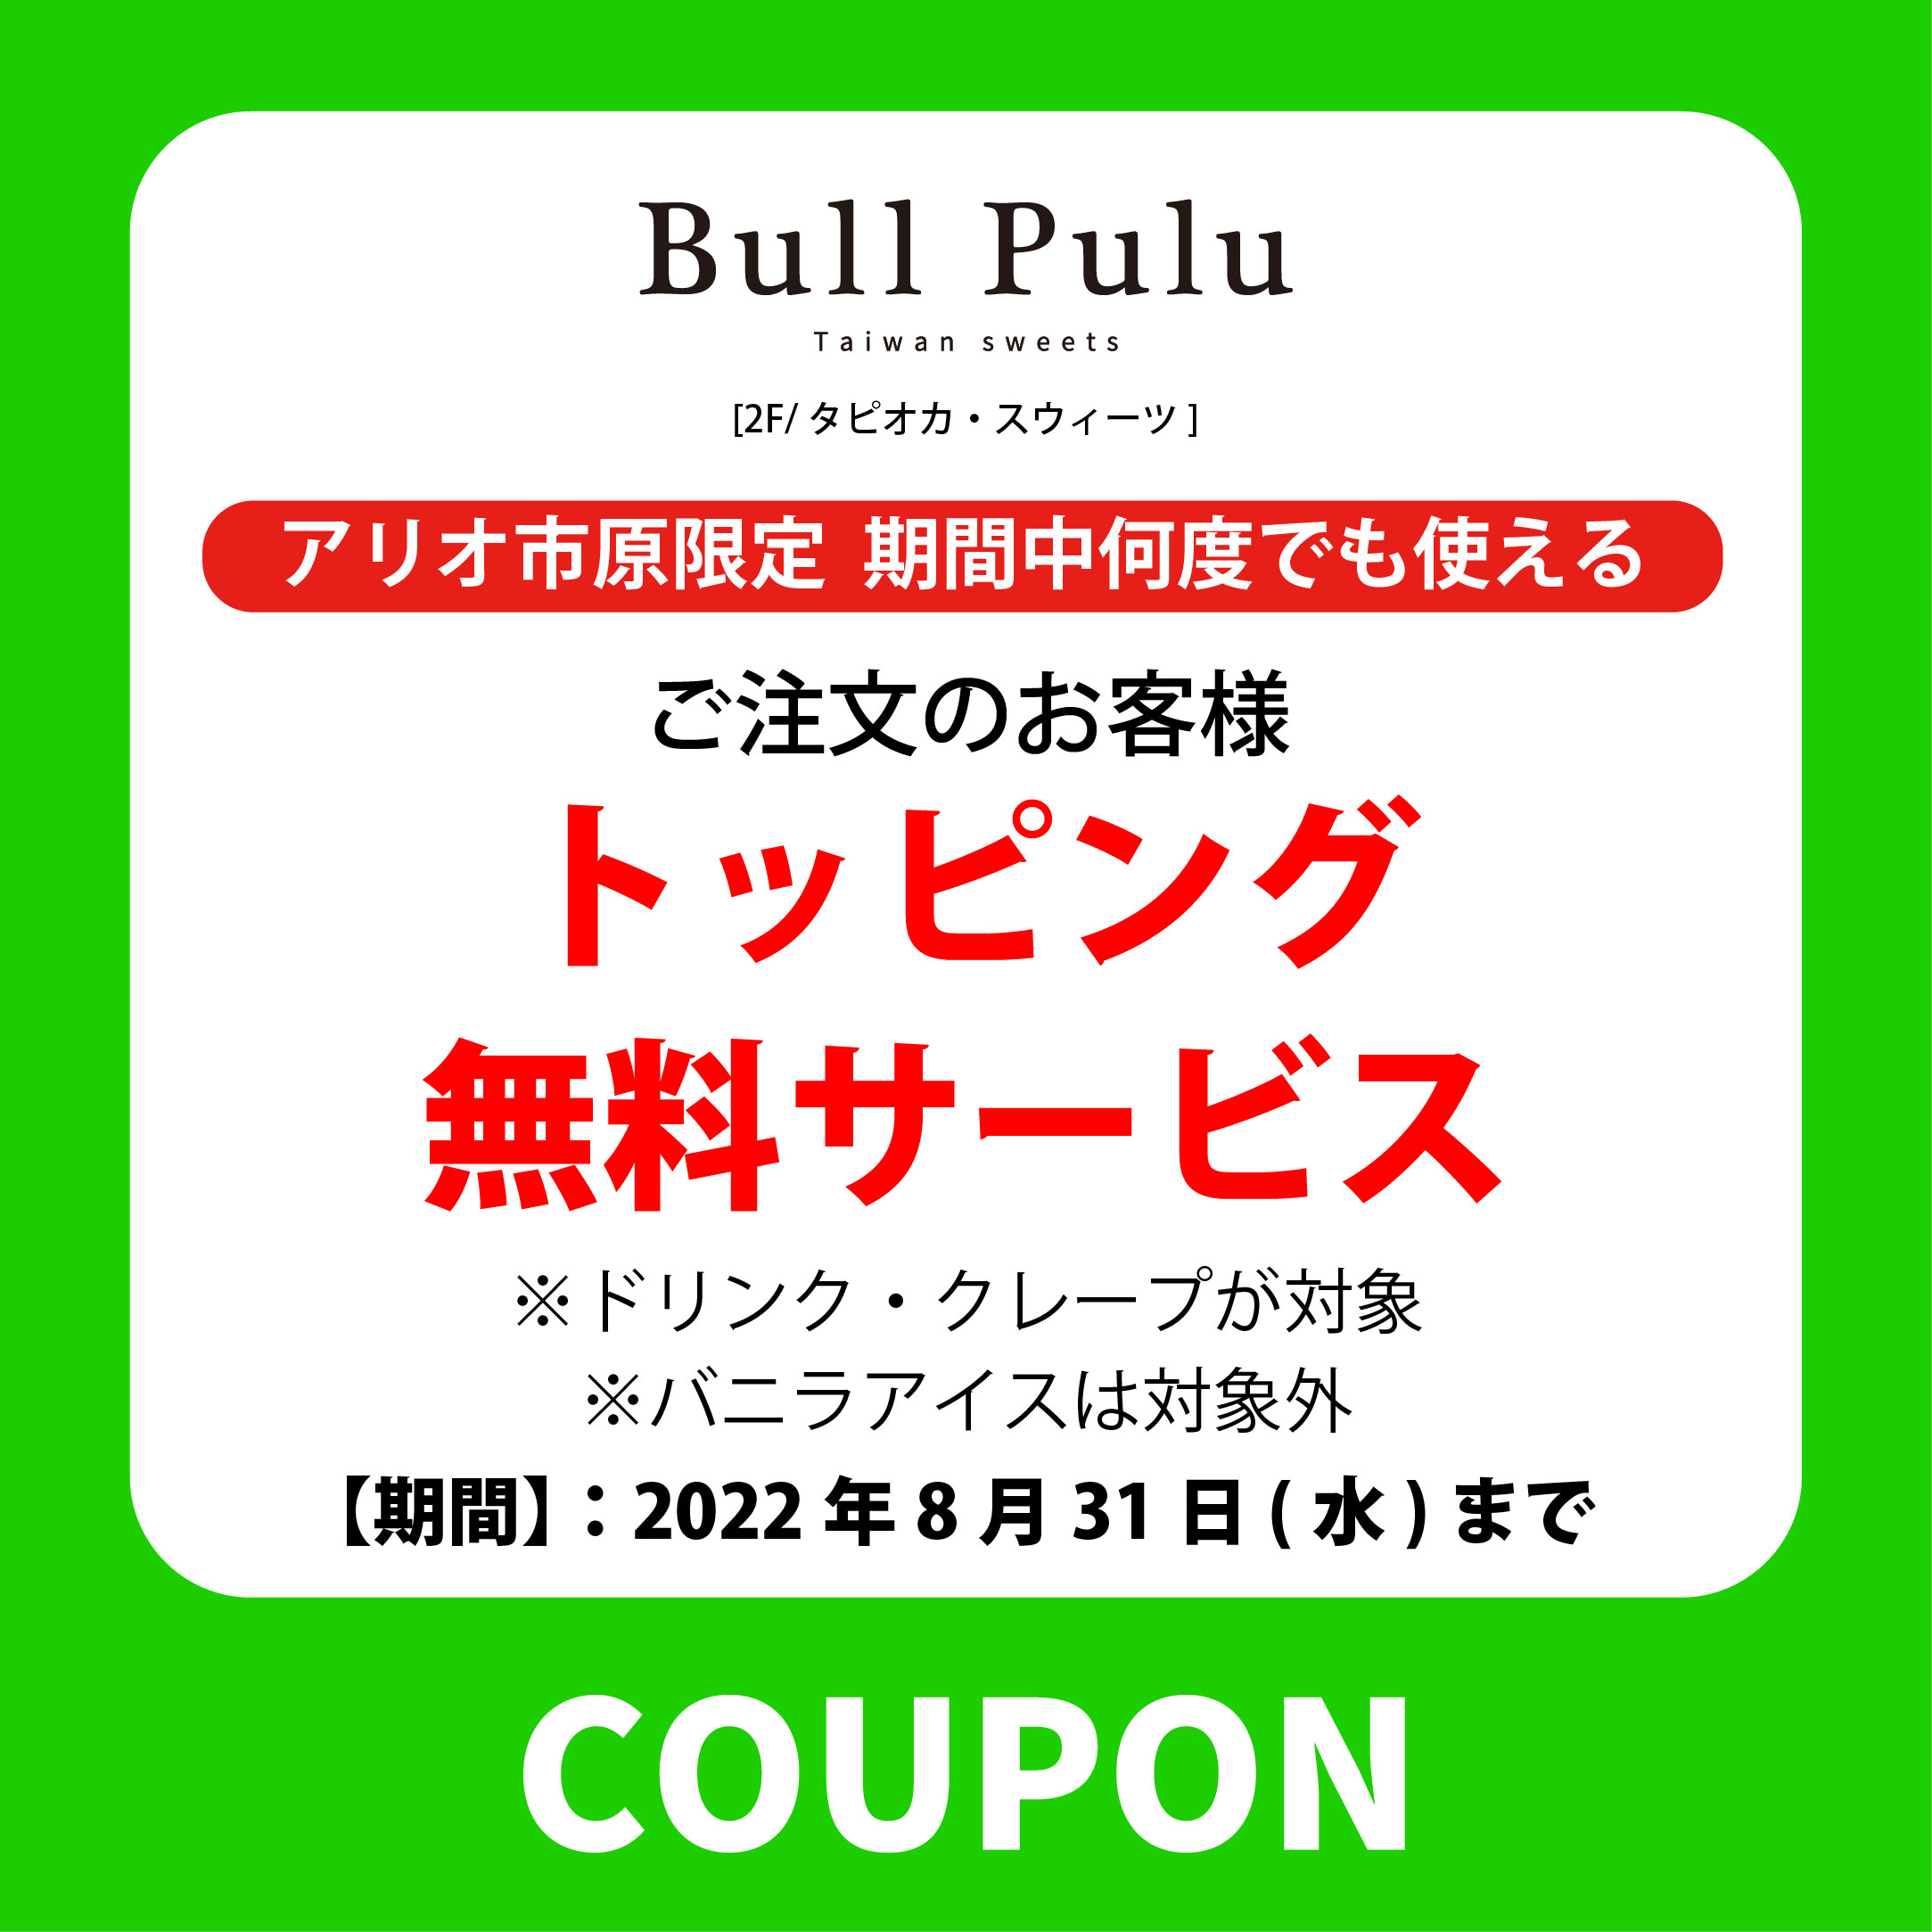 BullPulu-08.jpg